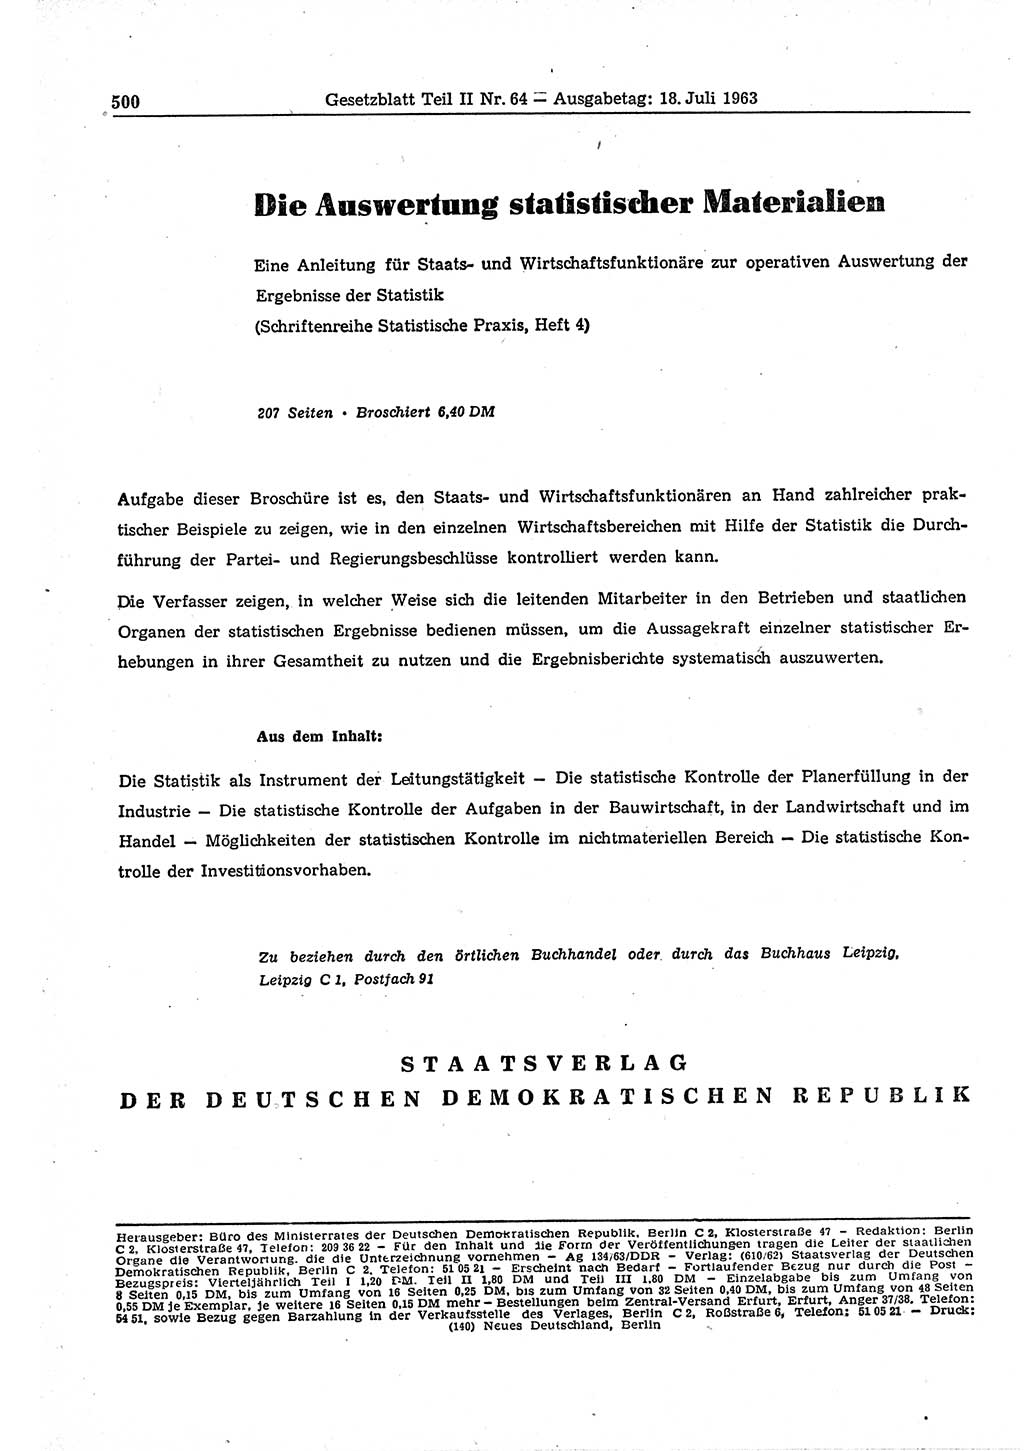 Gesetzblatt (GBl.) der Deutschen Demokratischen Republik (DDR) Teil ⅠⅠ 1963, Seite 500 (GBl. DDR ⅠⅠ 1963, S. 500)